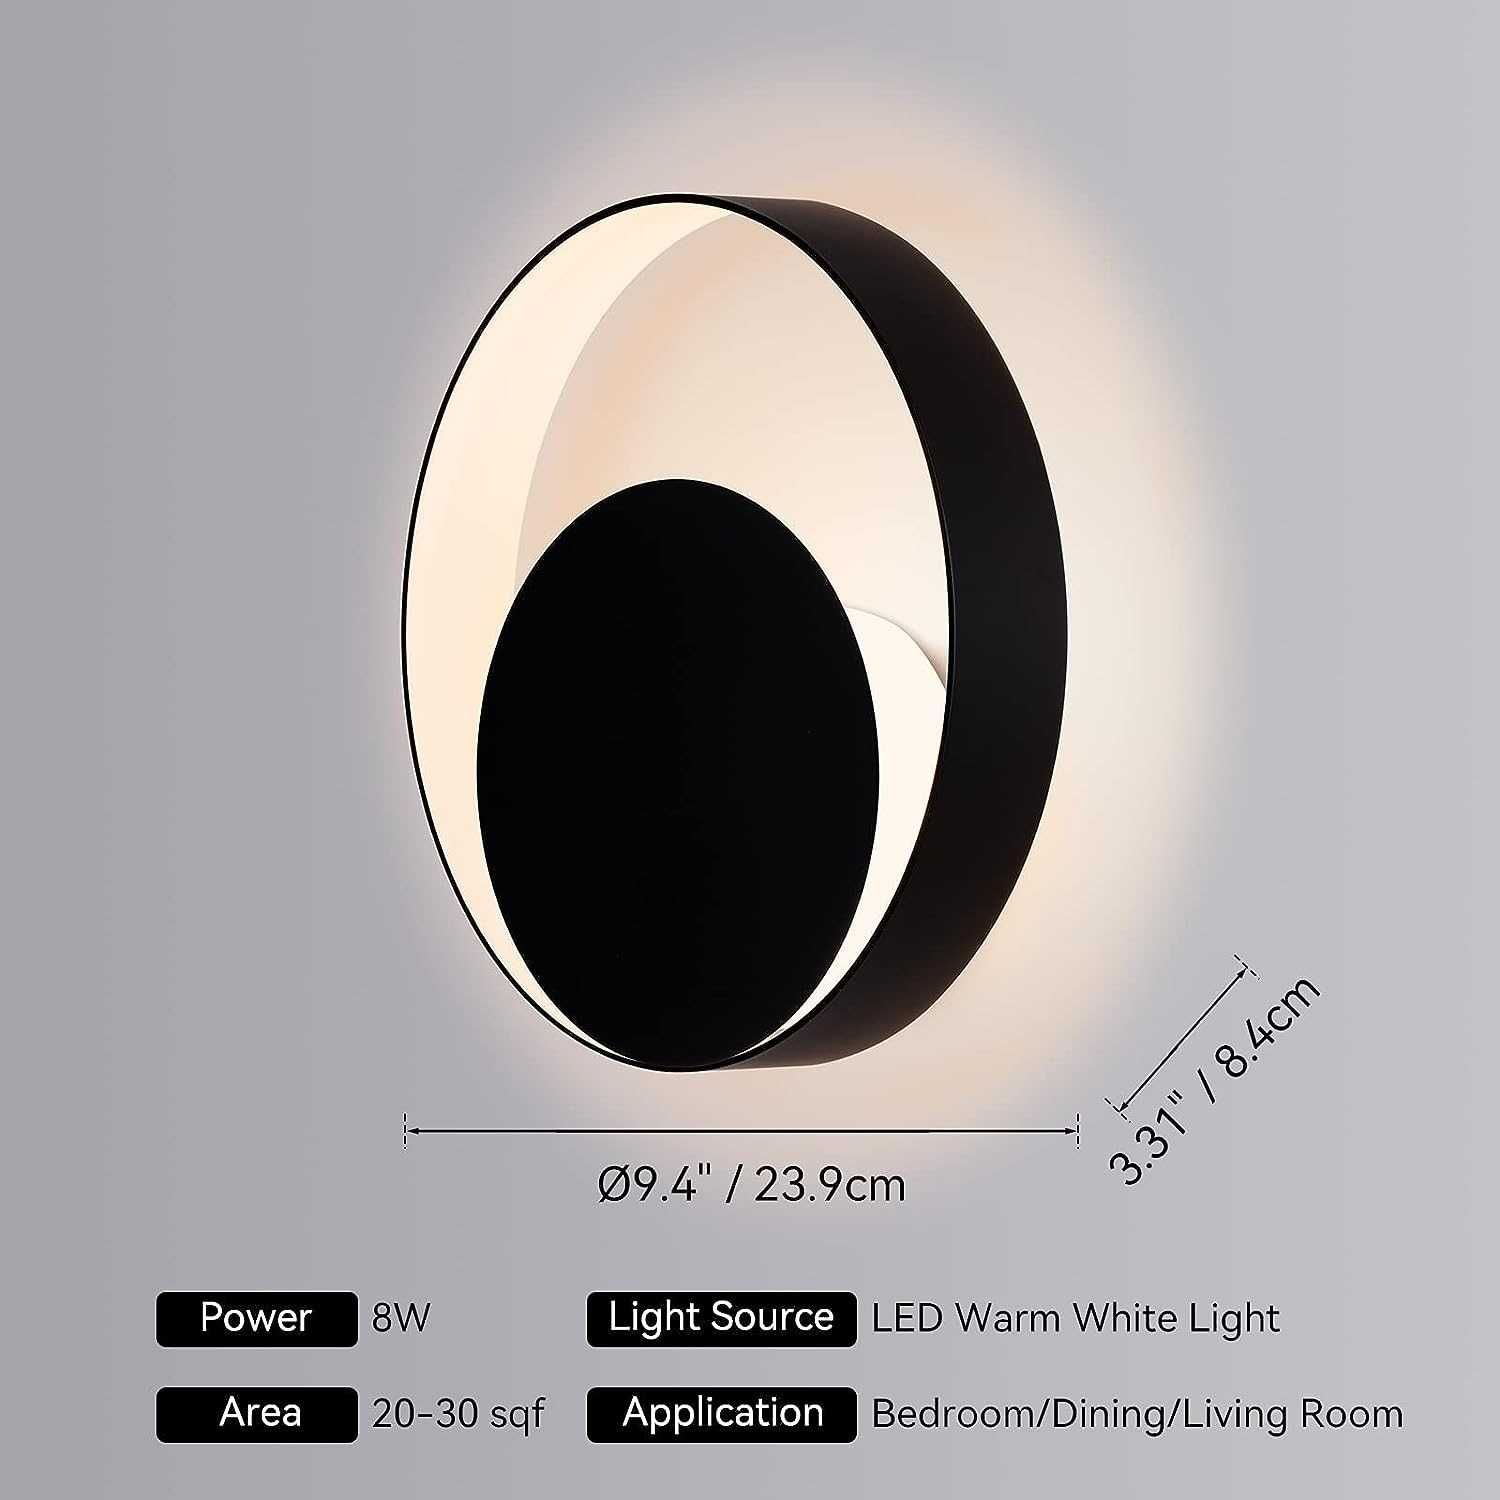 Kinkiet minimalistyczny 8W  LED Ciepłe Białe Światło , kształt słońca